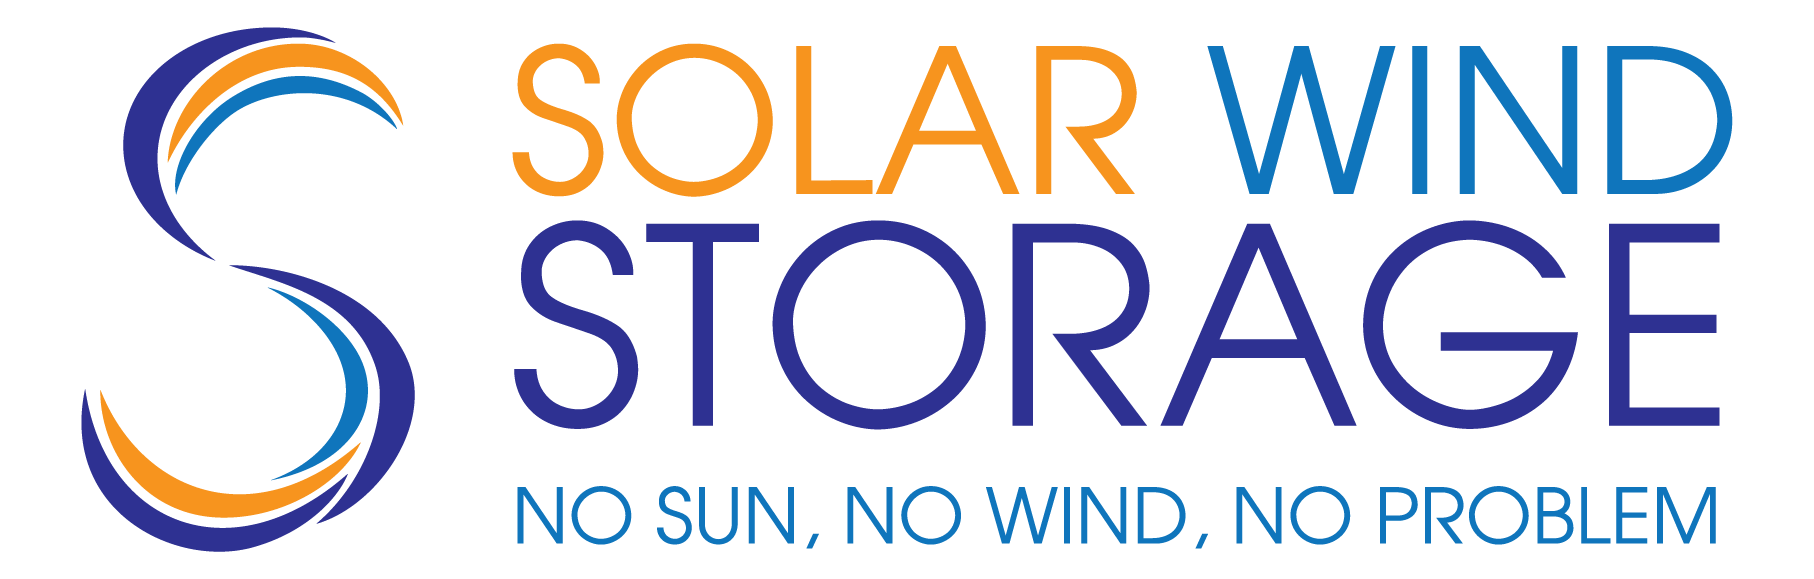 solar wind storage logo 2022